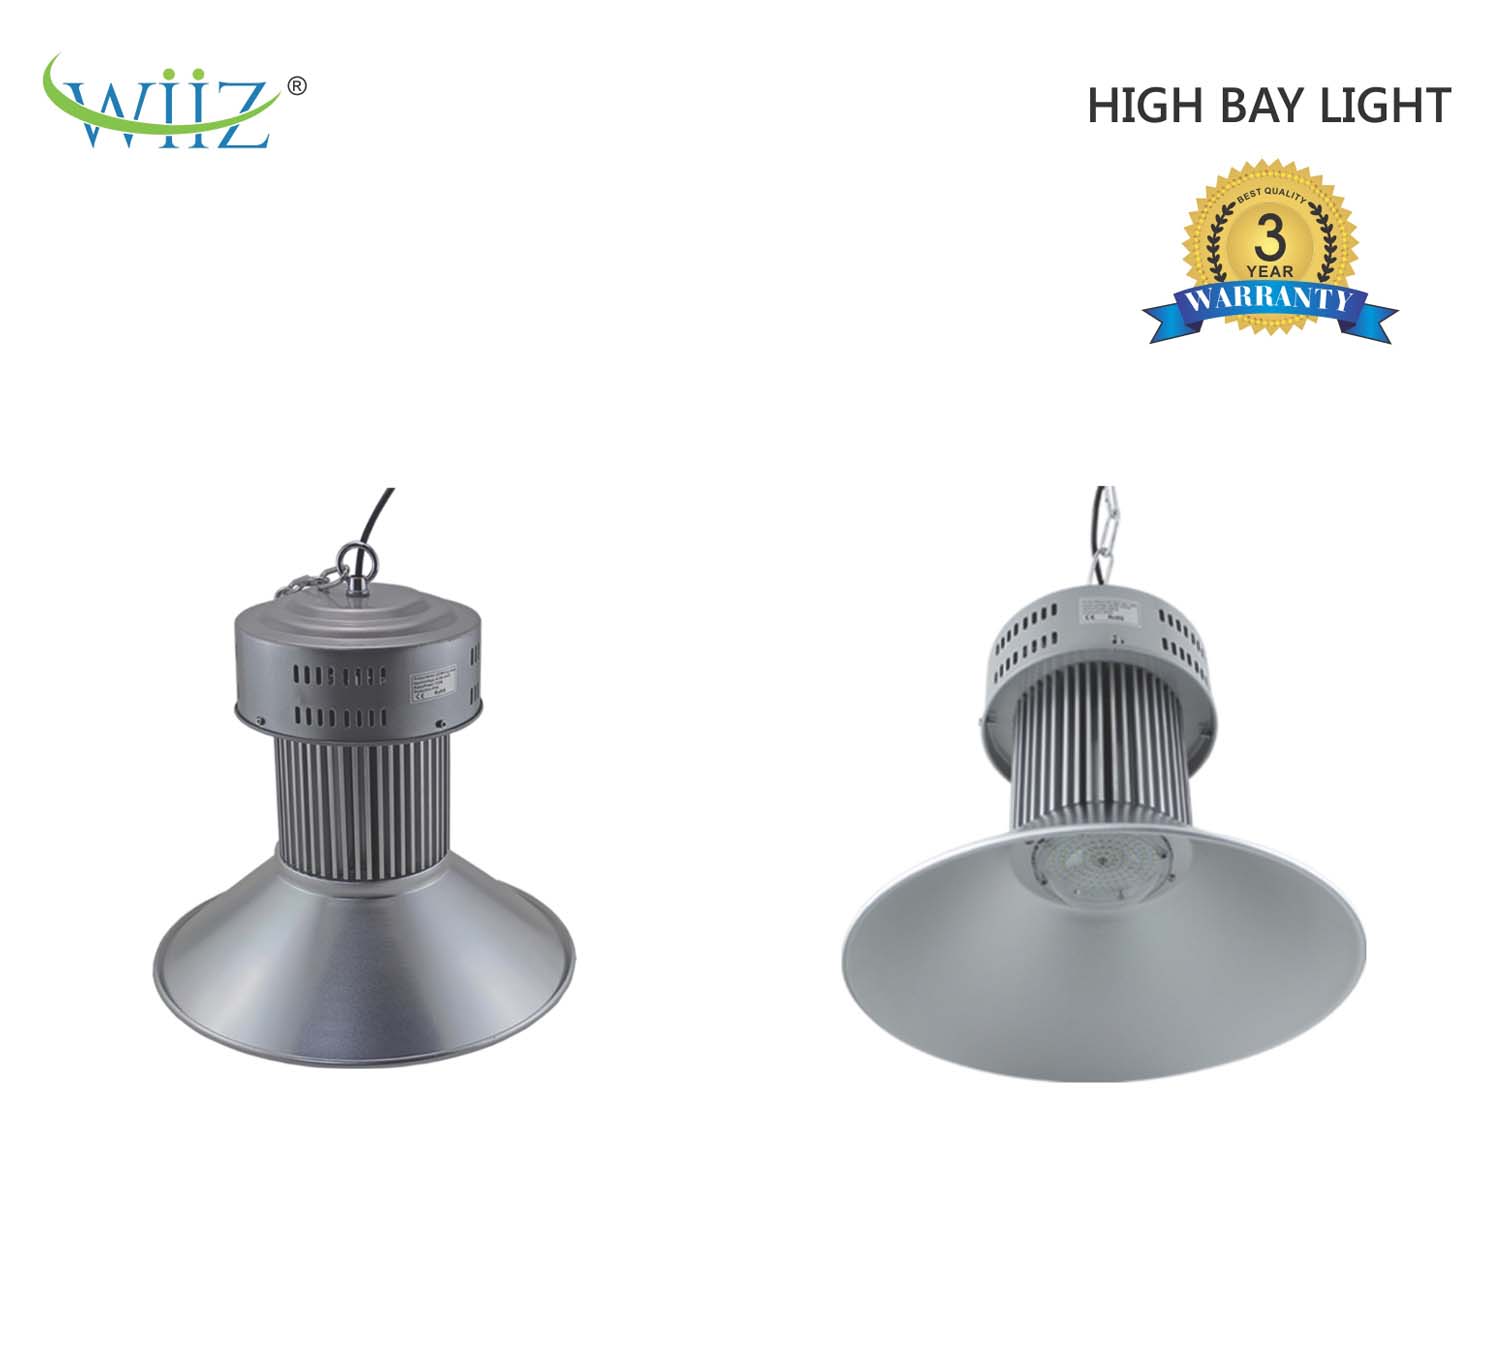 Wiiz High Bay Light